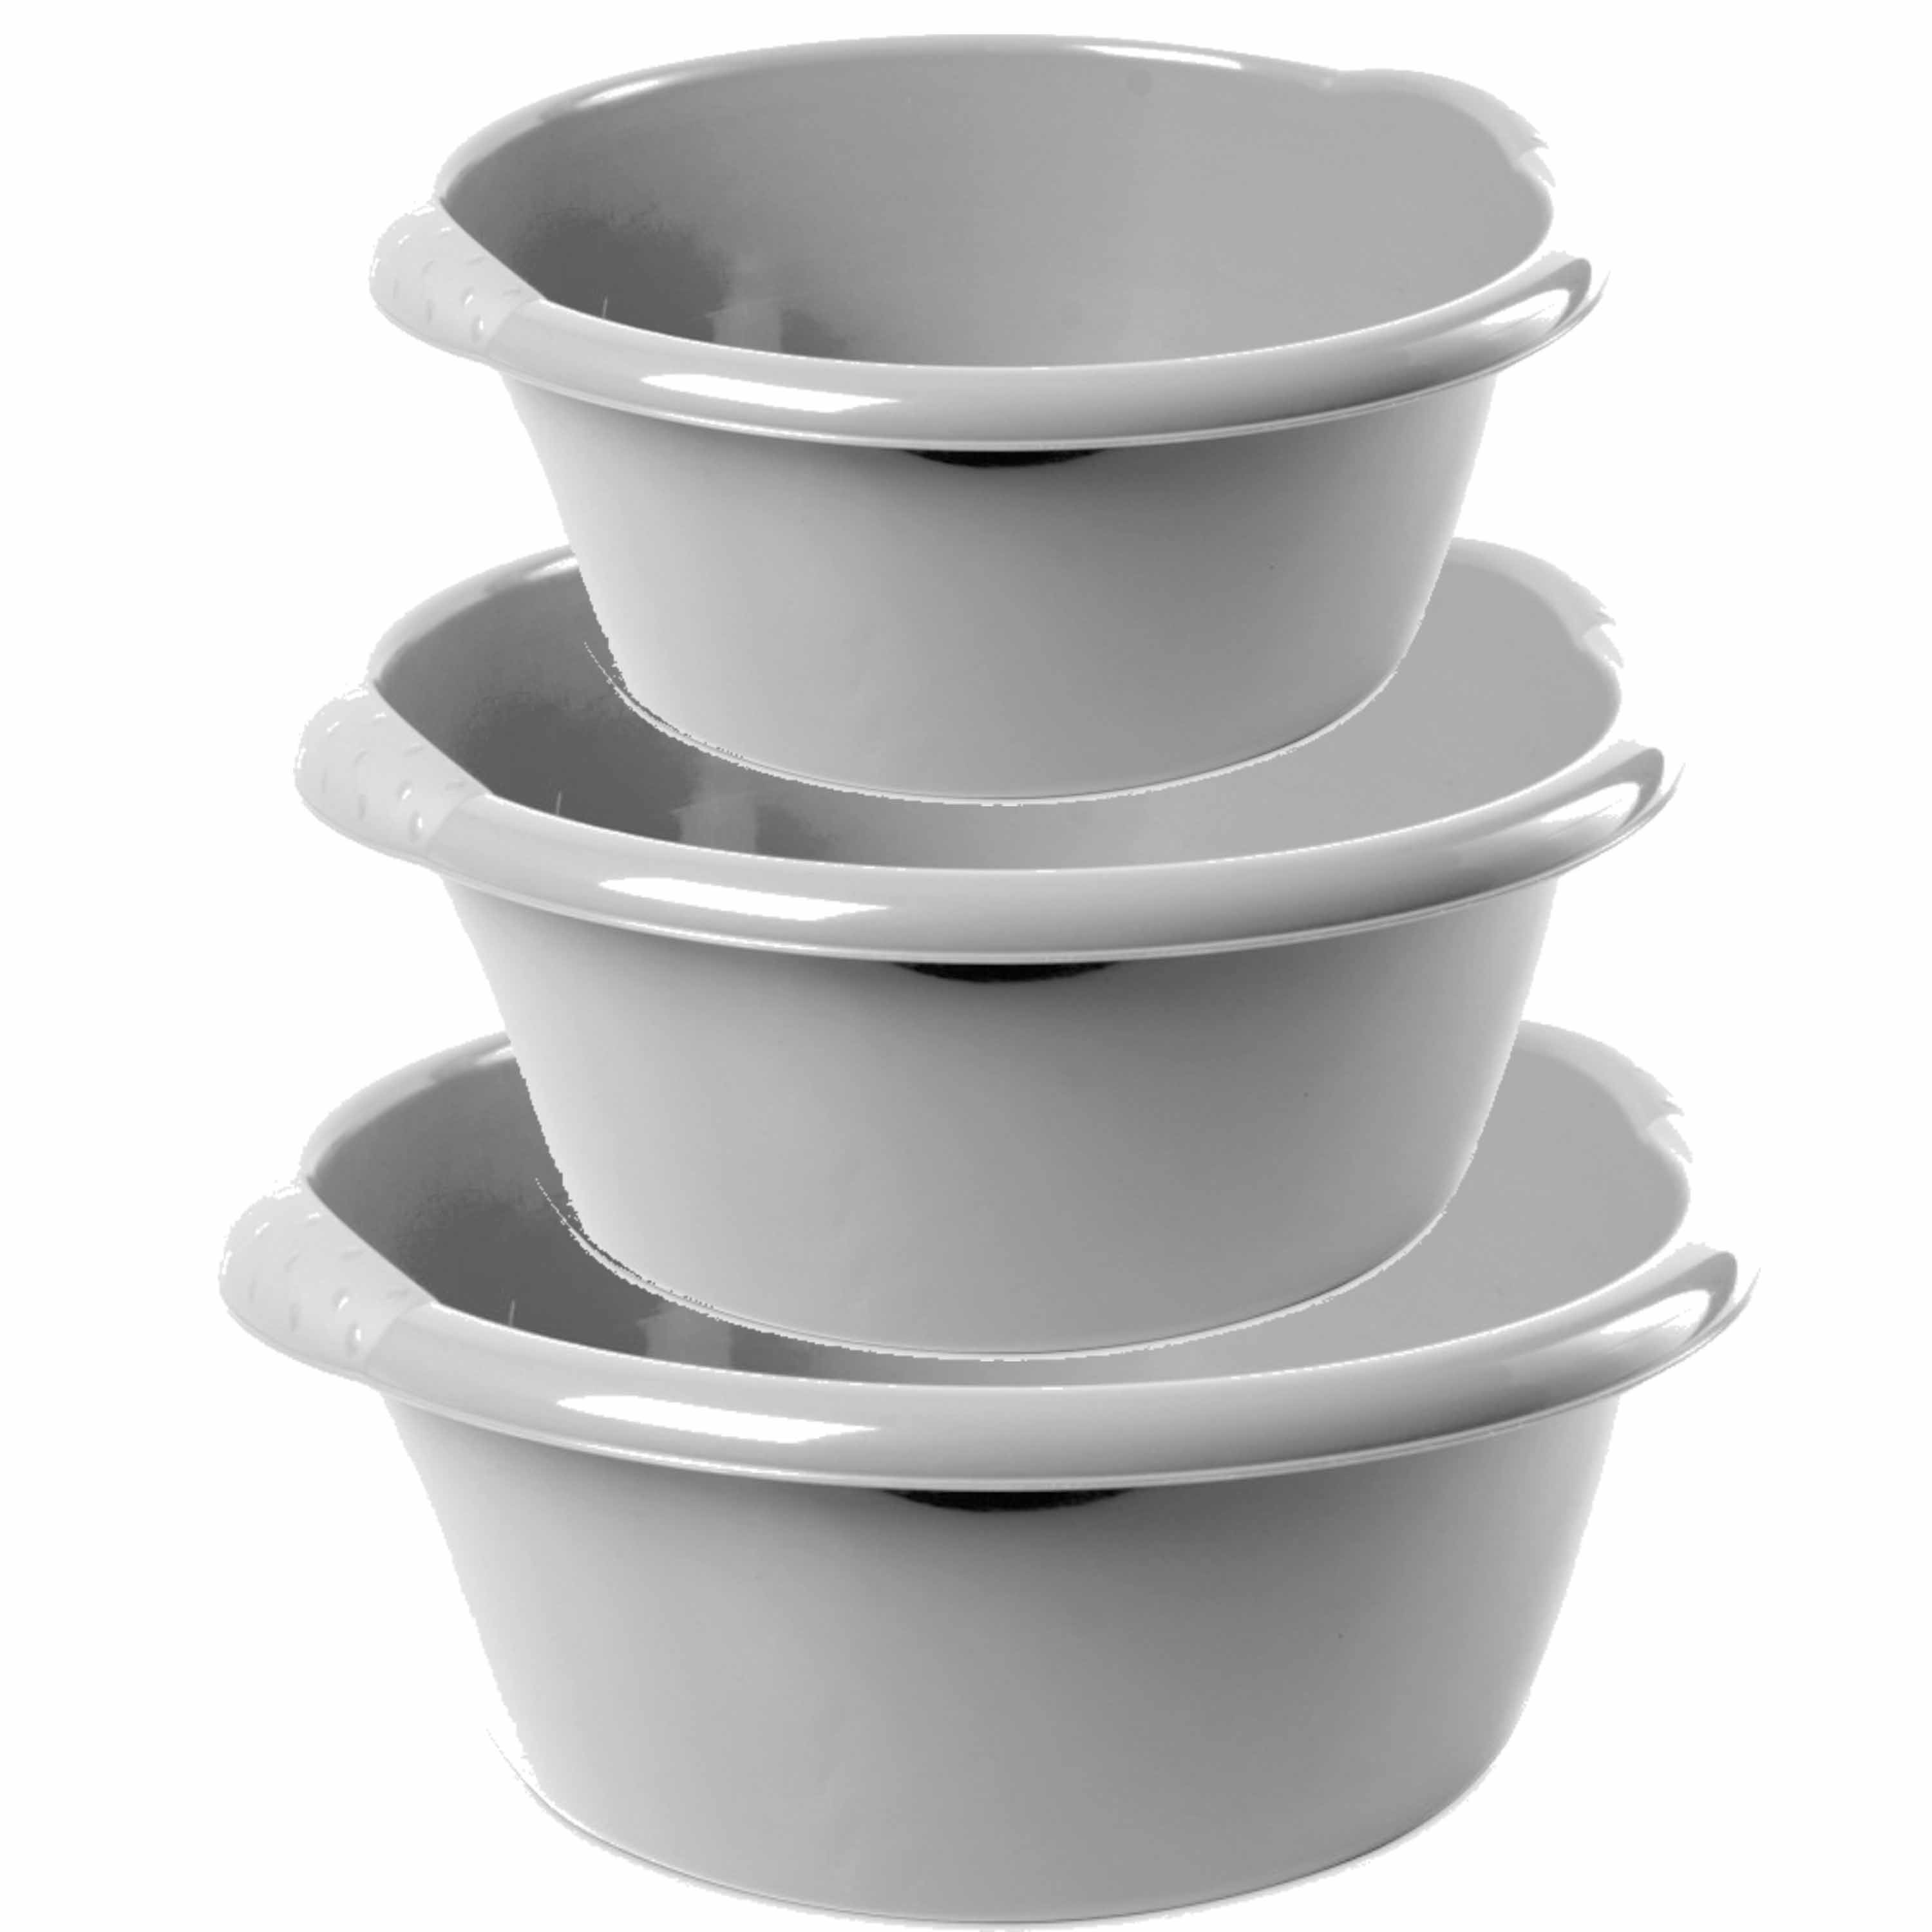 Combi set van 3x stuks ronde afwasteiltjes-afwasbakken in het zilver 6-10-15 liter